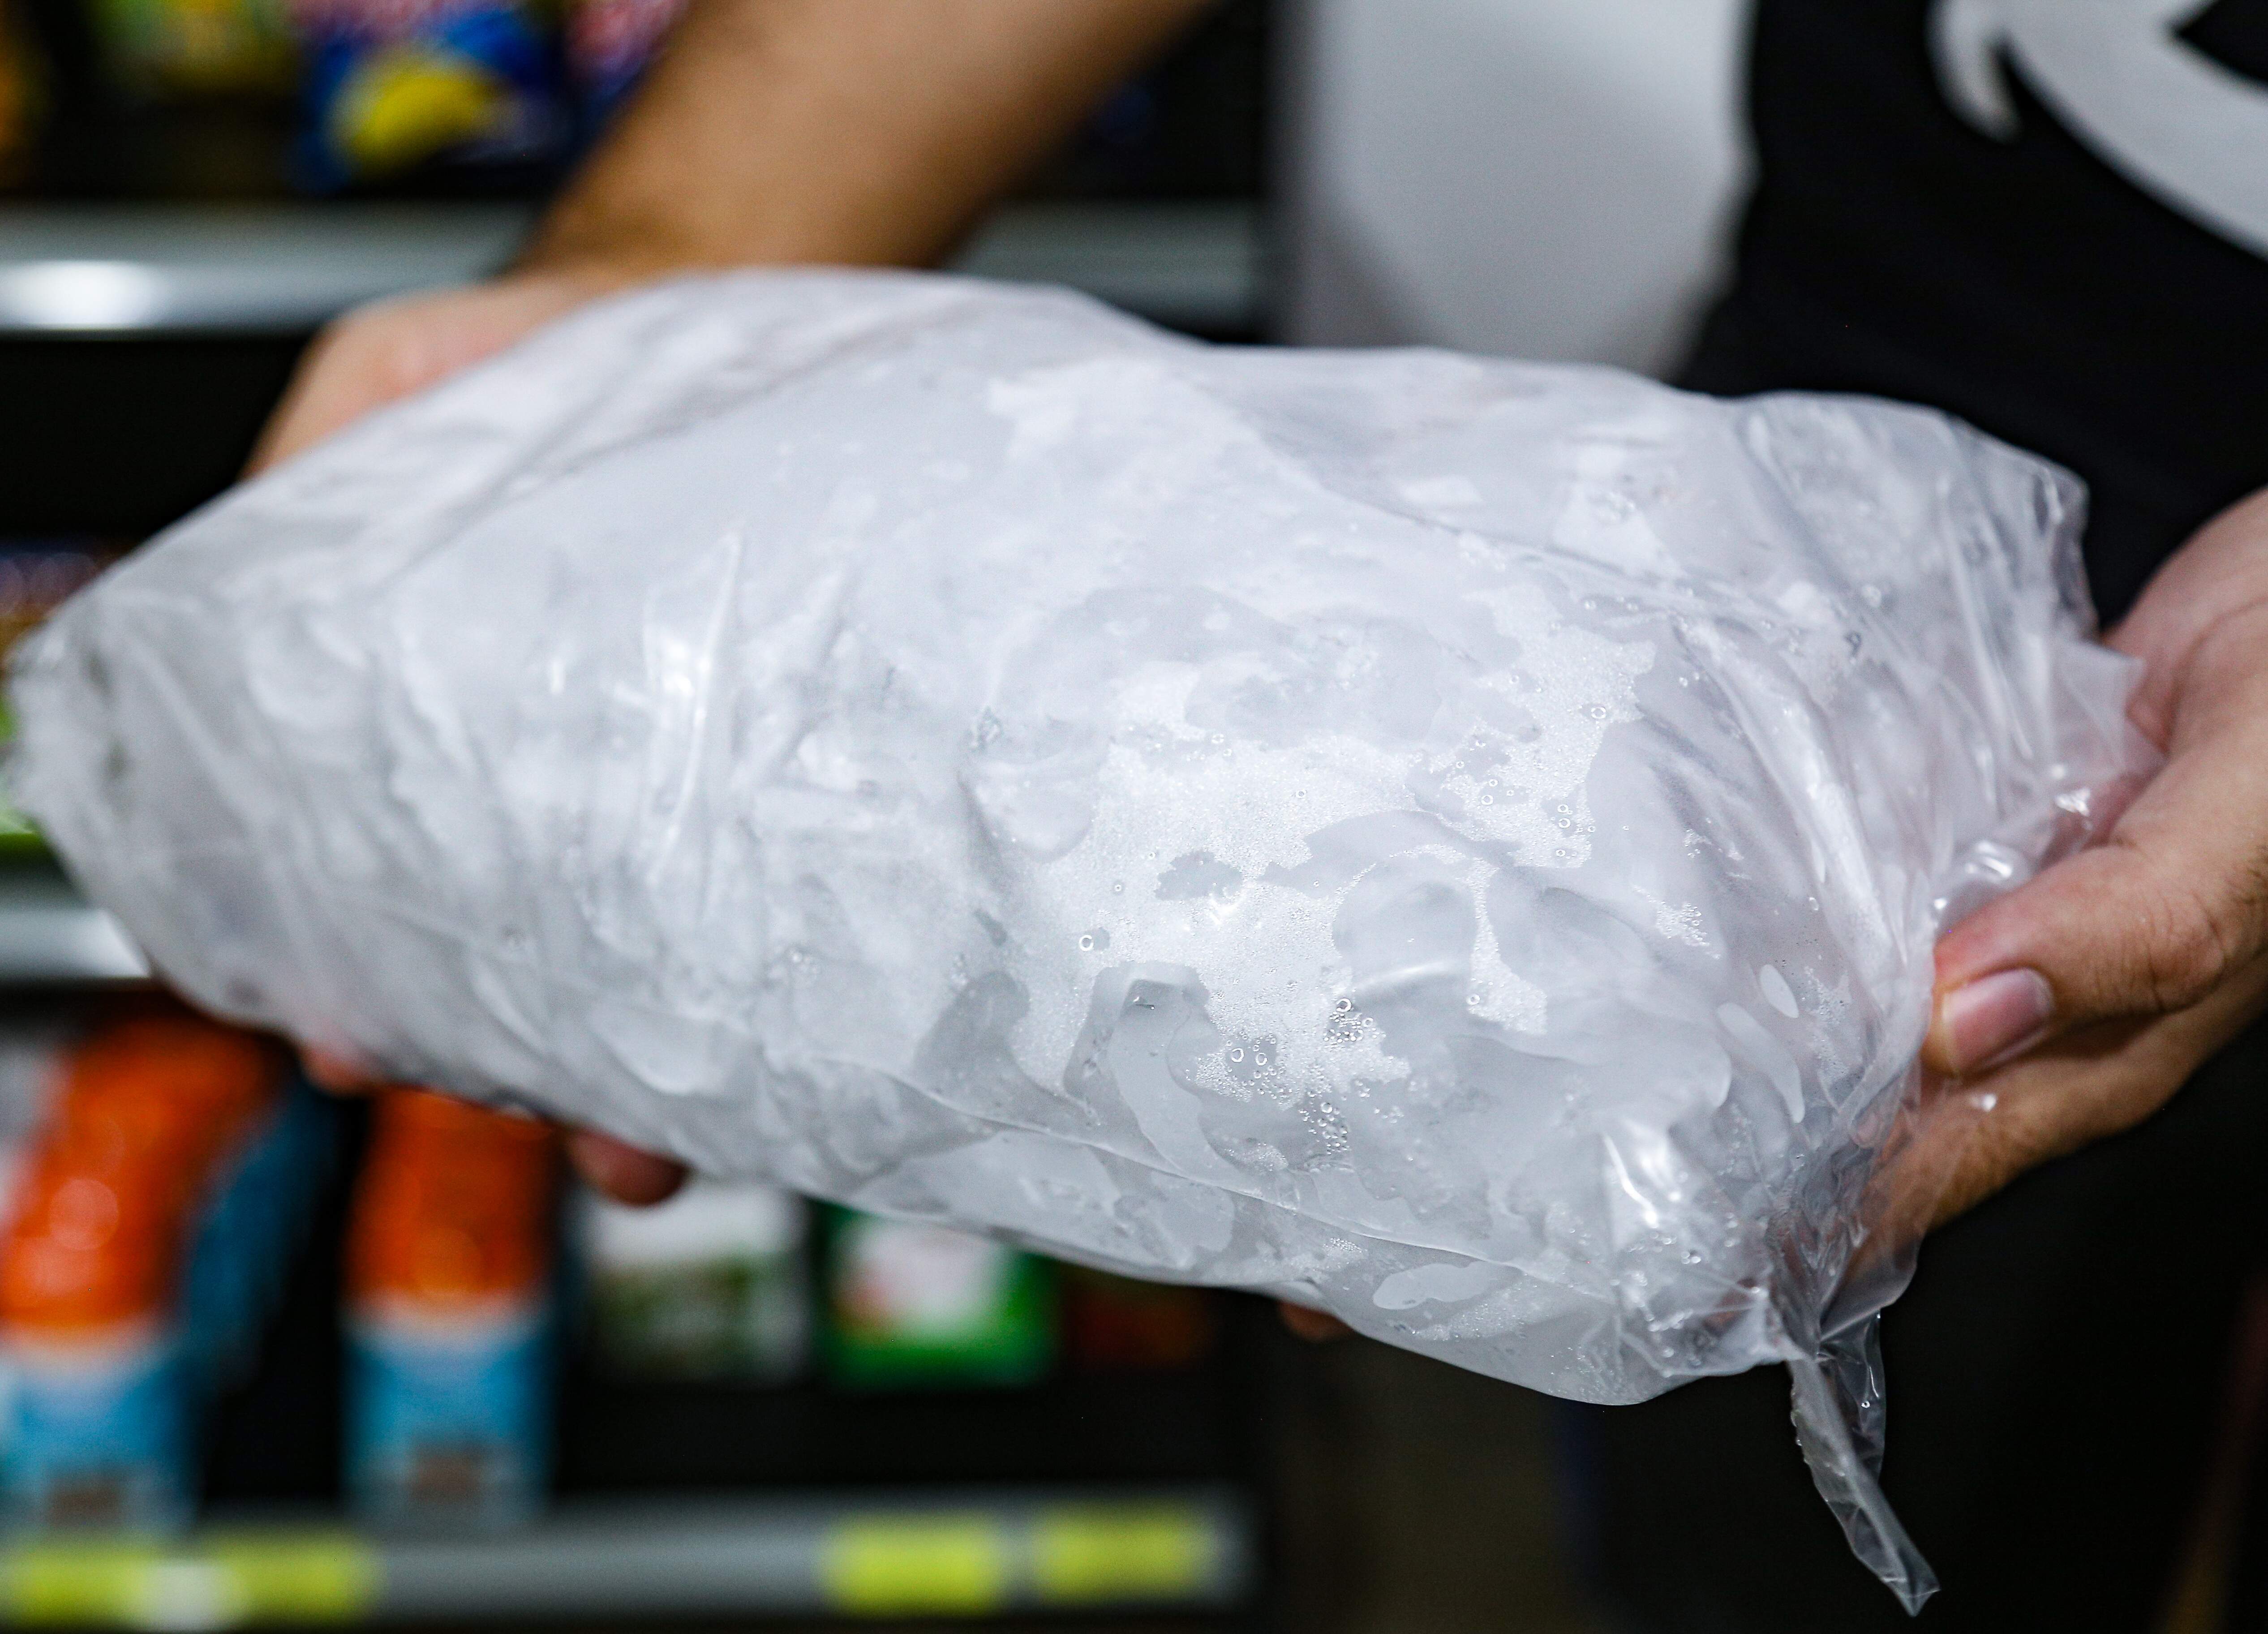 Cubo de gelo vira “arma” e é proibido em blocos